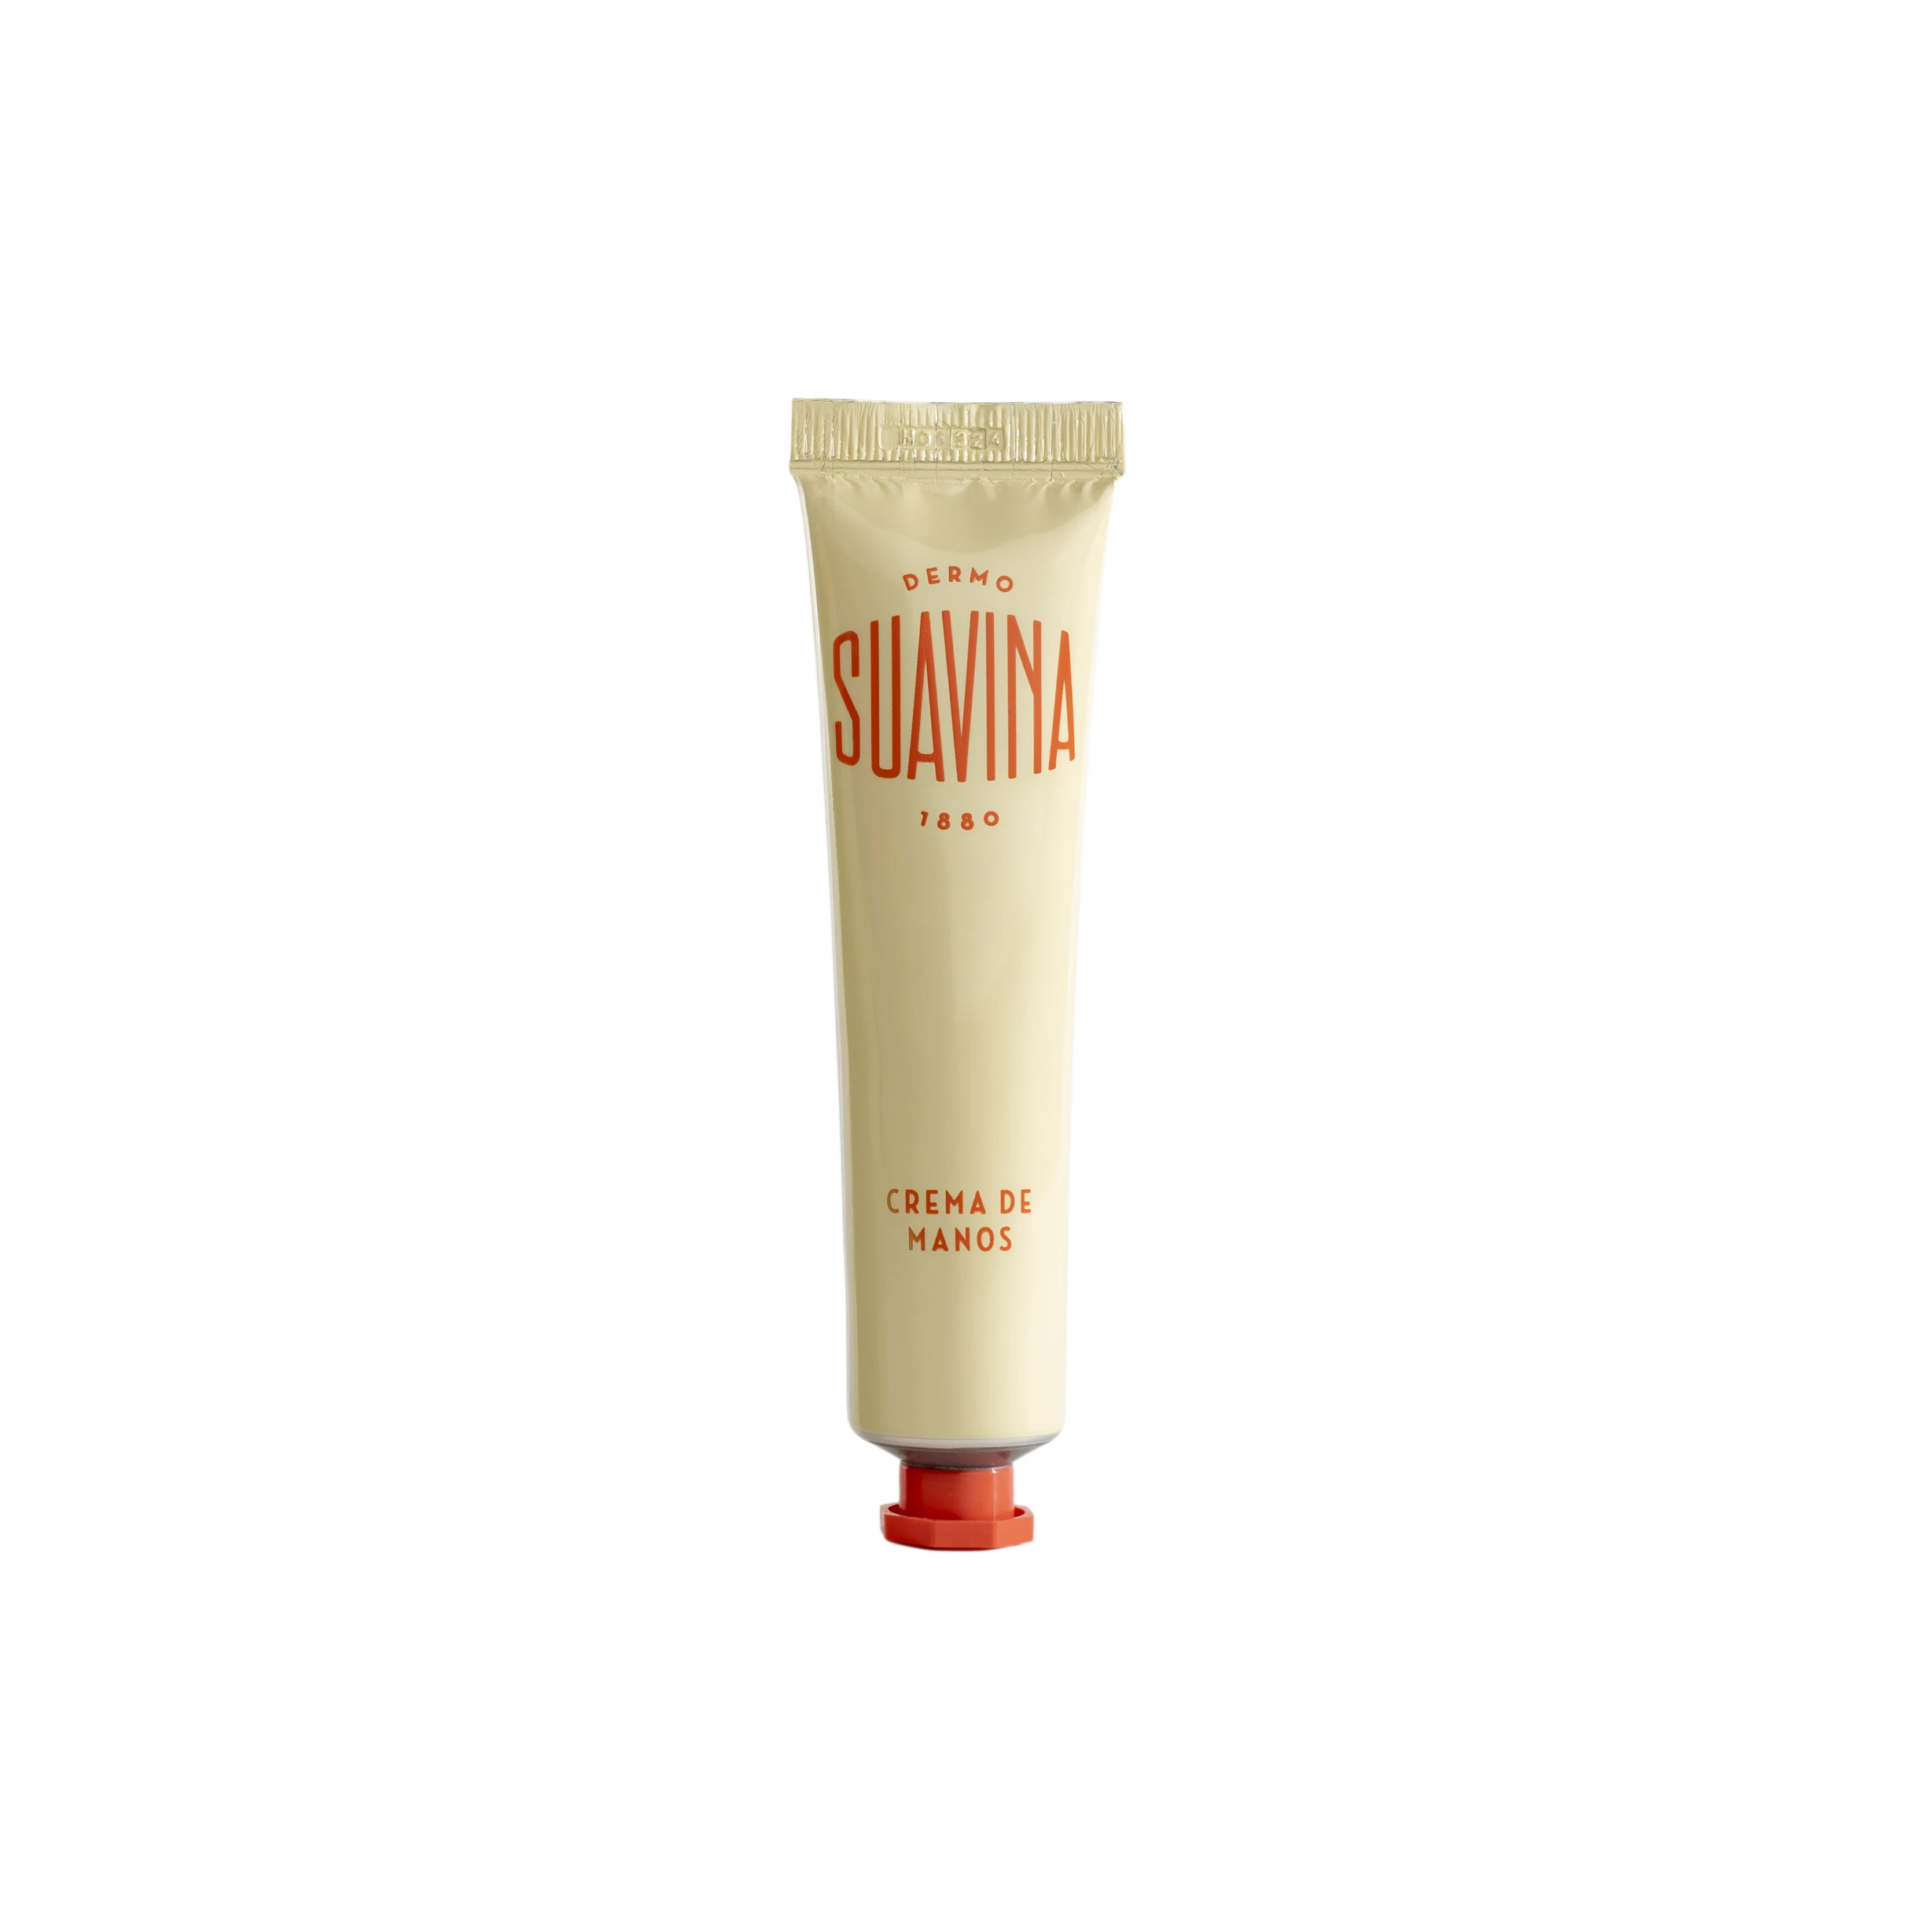 Dermo Suavina Original Hand Cream - 40ml - Lifestory